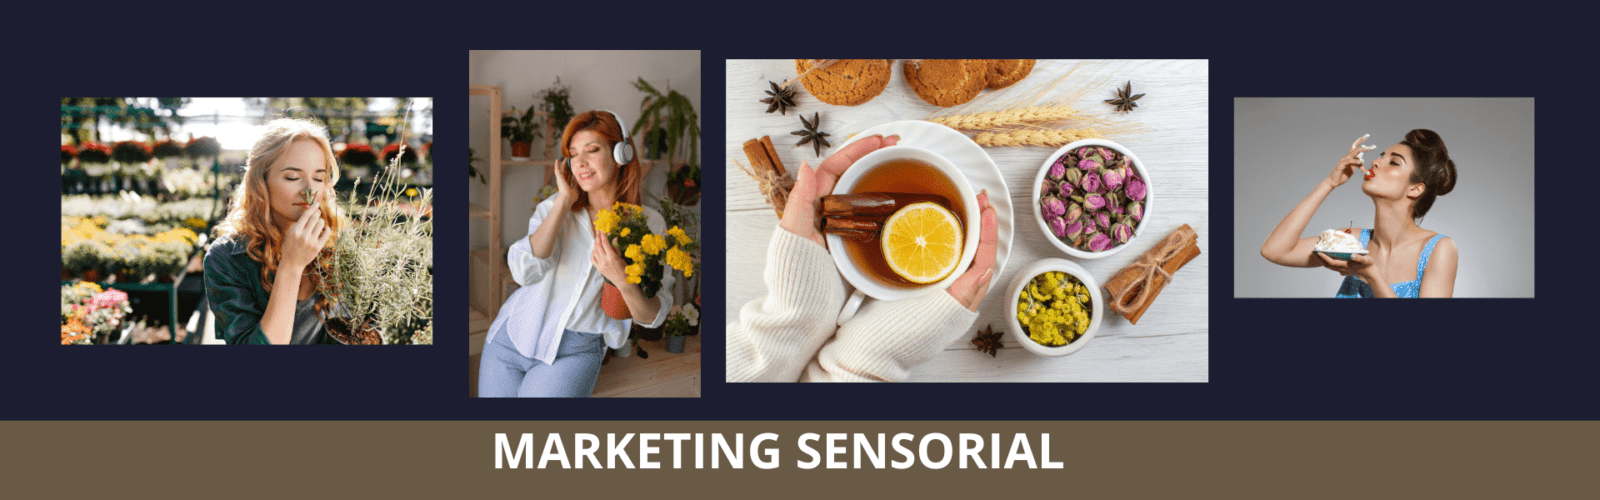 Tipos de marketing sensorial